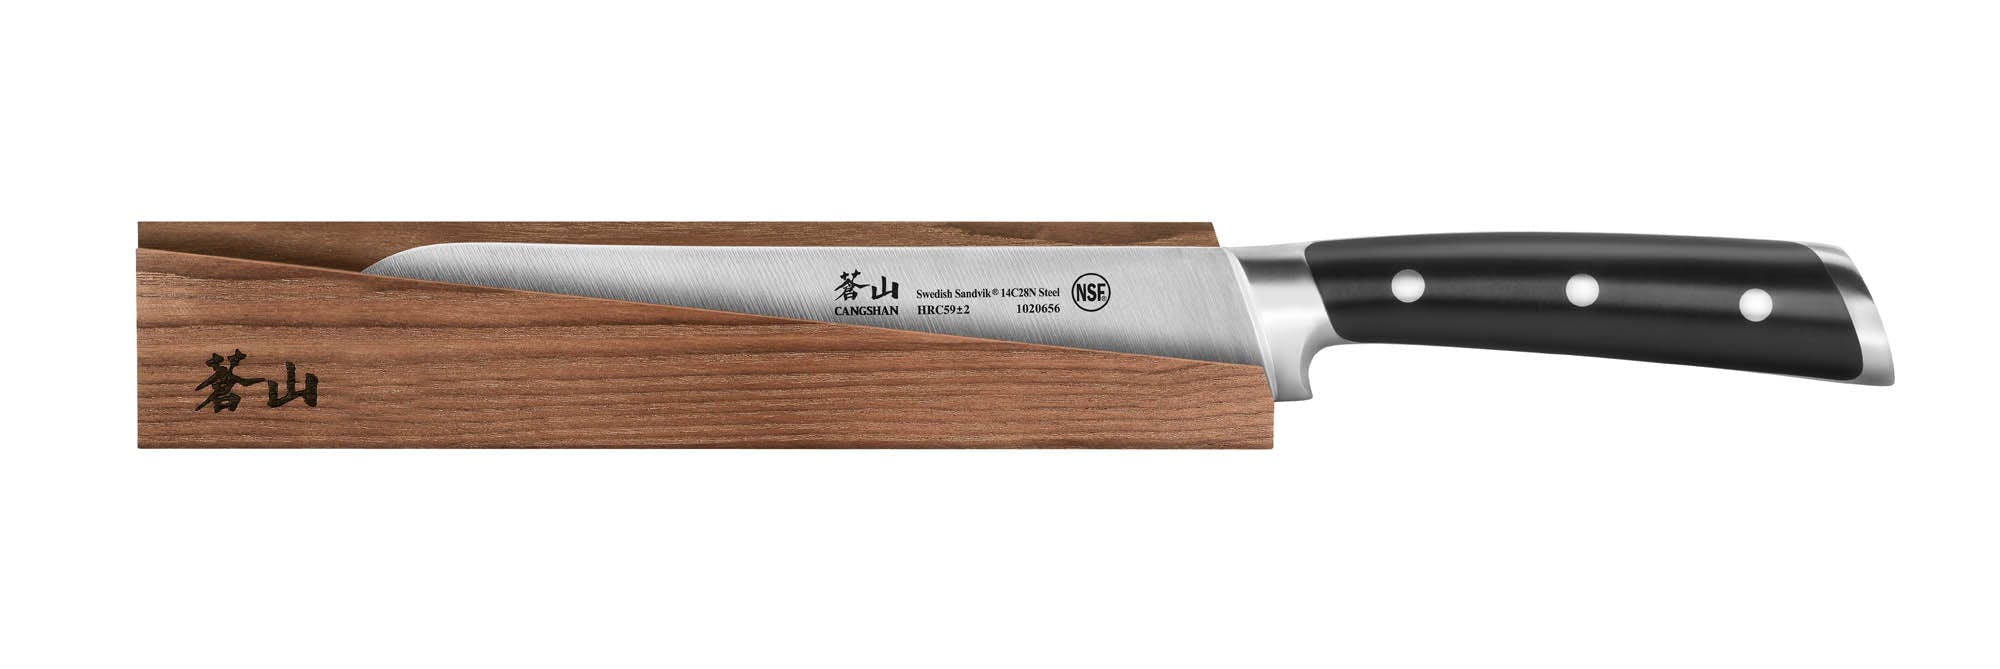 Cangshan TS Series Bread Knife